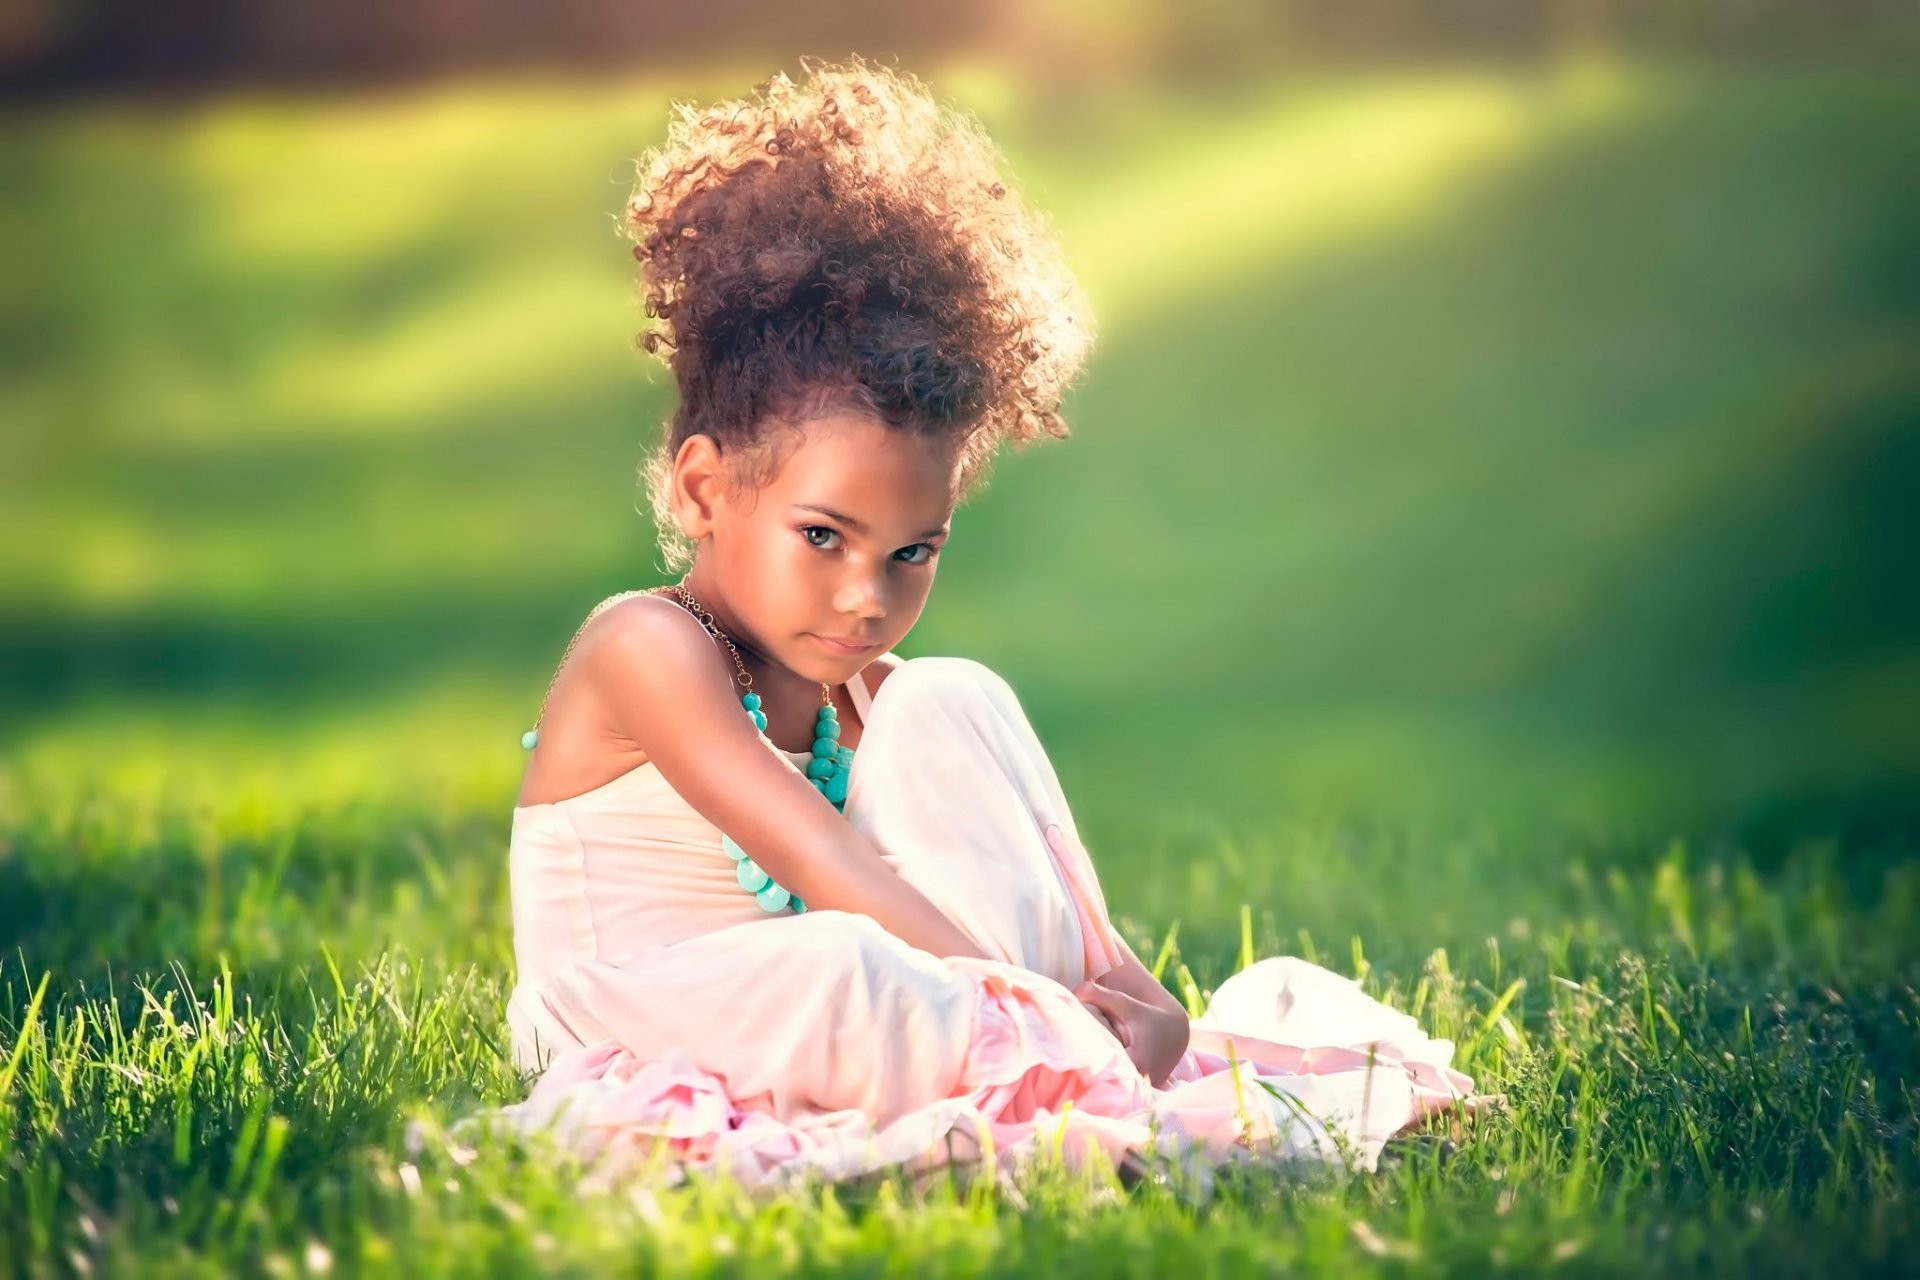 Картинка: Девочка, прическа, платье, взгляд, сидит, трава